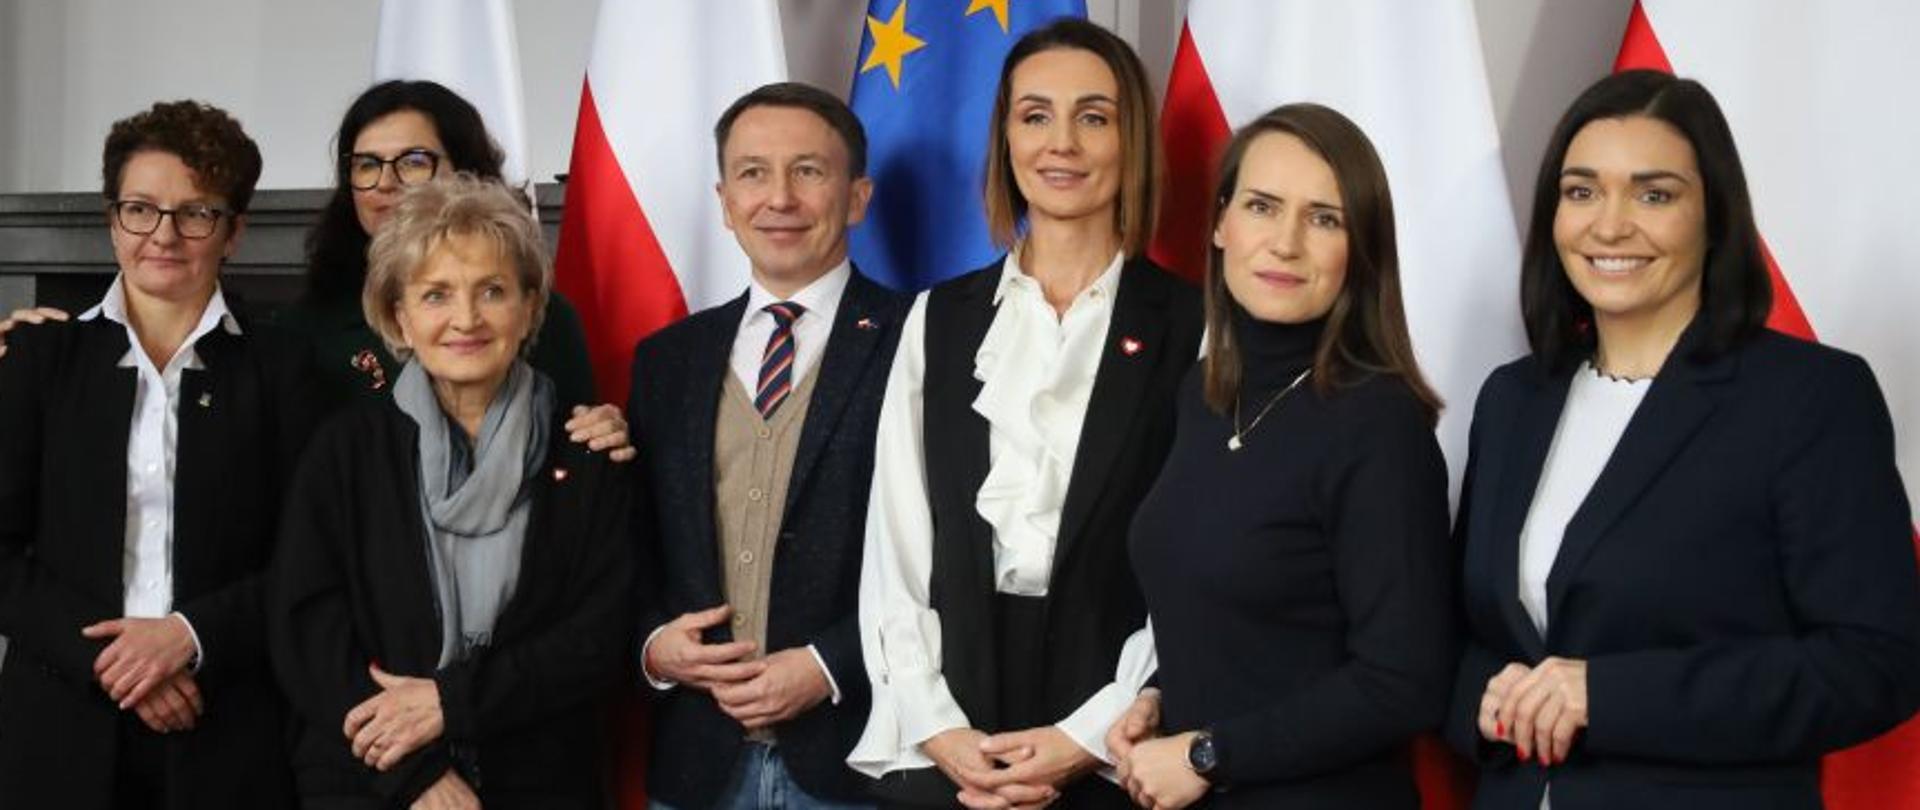 Sala konferencyjna, siedem osób stojących na tle flag polskich i unijnych.